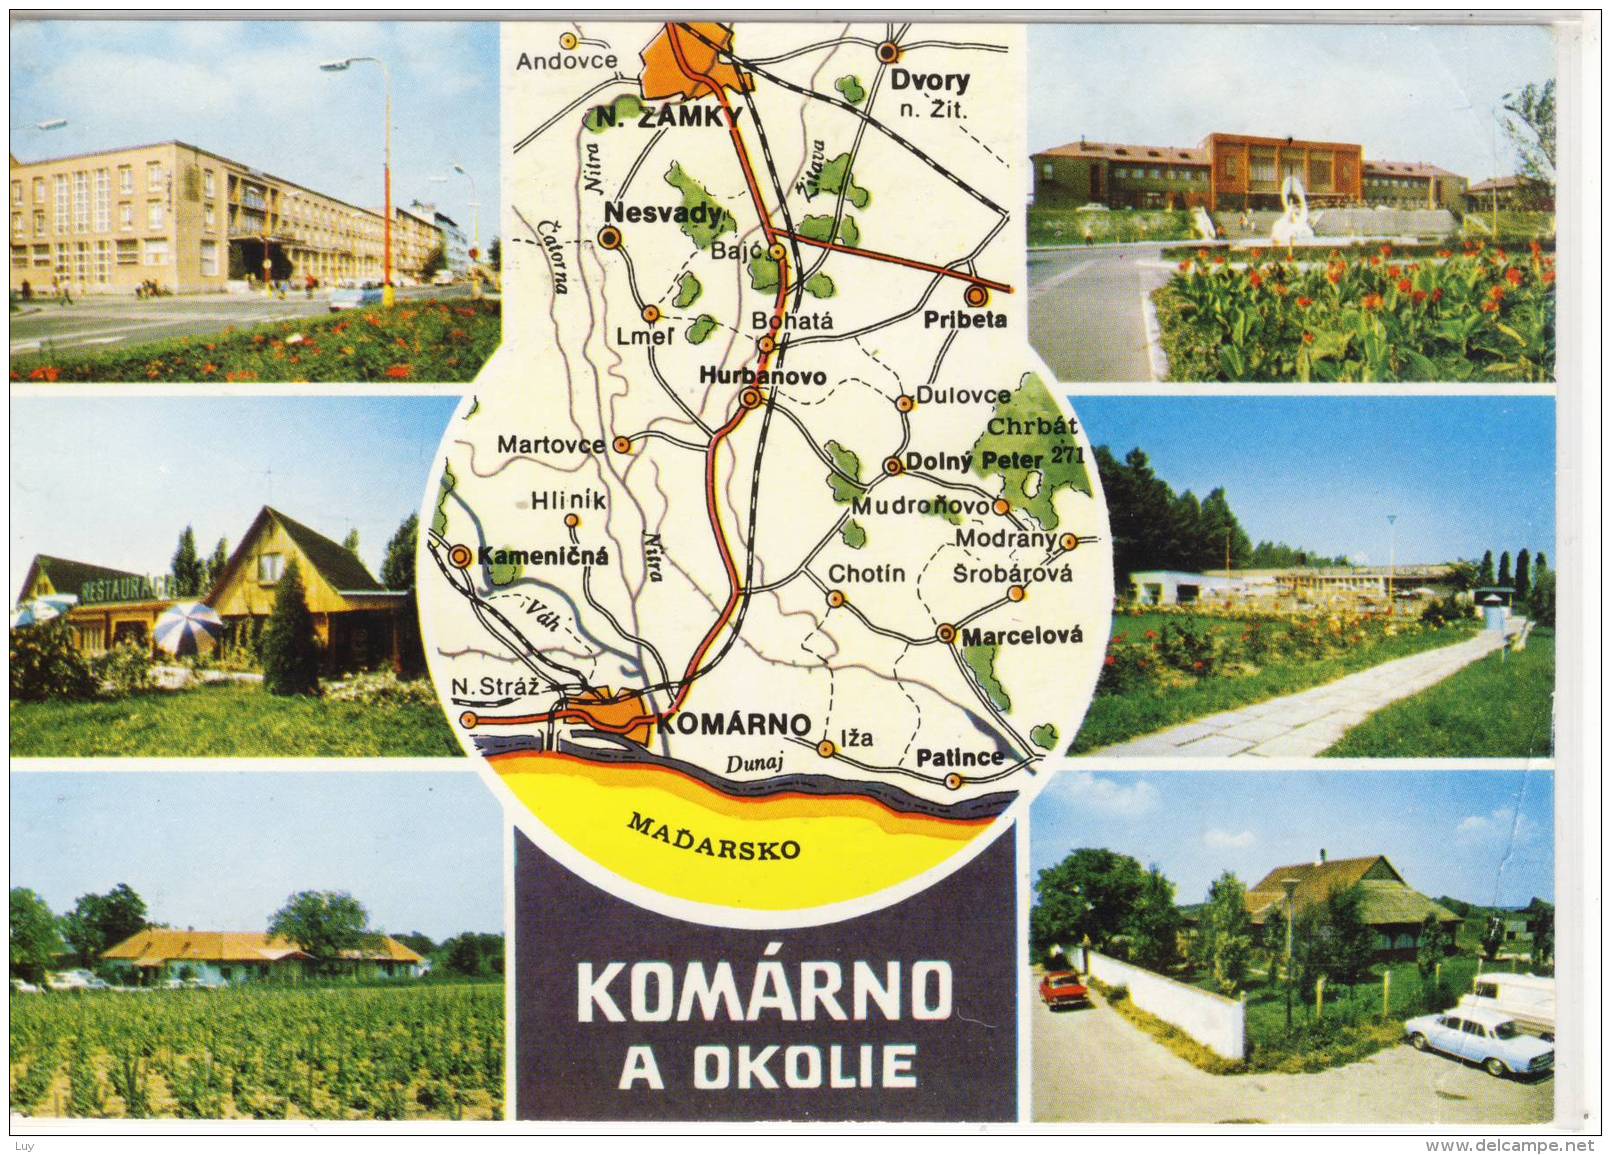 KOMÁRNO A Okolie - Hotel Európa, Nova Straz - Restauracia, Patince - Restauracia Thermal ..... - Slovacchia